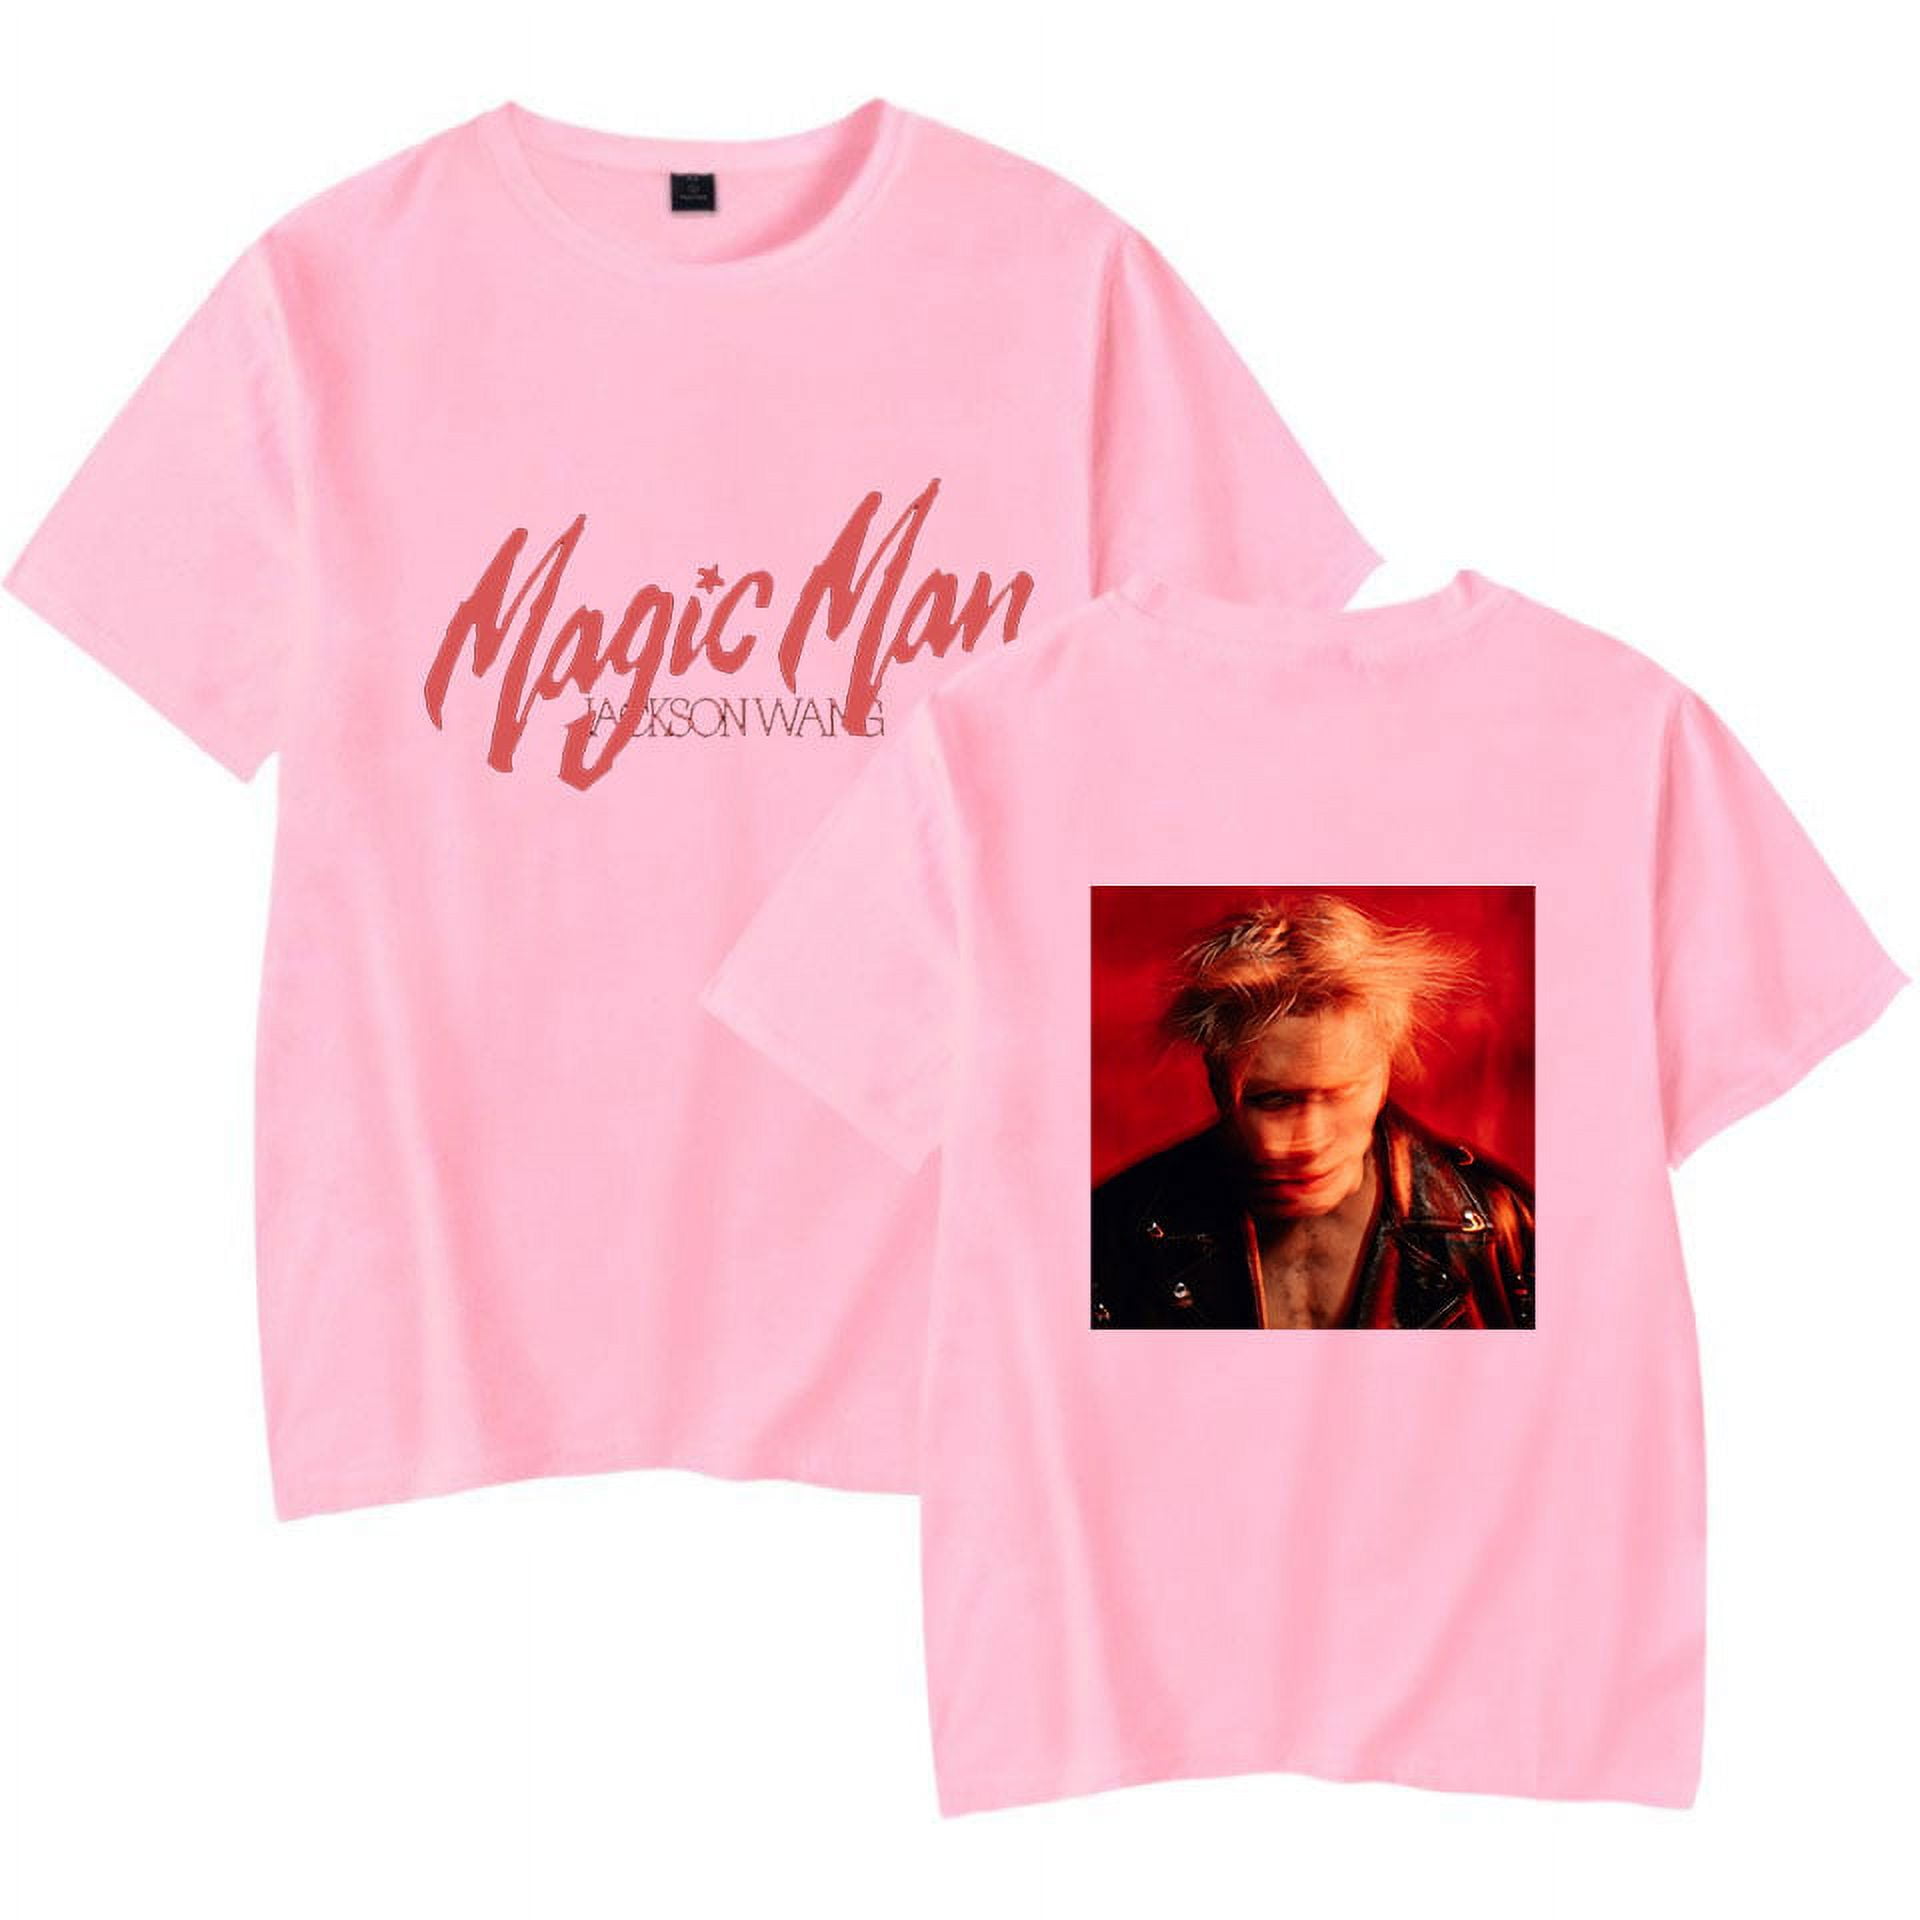  Jackson Wang Magic Man Tour Merch T-Shirt, K-pop Support Cotton  Loose Tee for Girls Women Fans S Blue : Sports & Outdoors